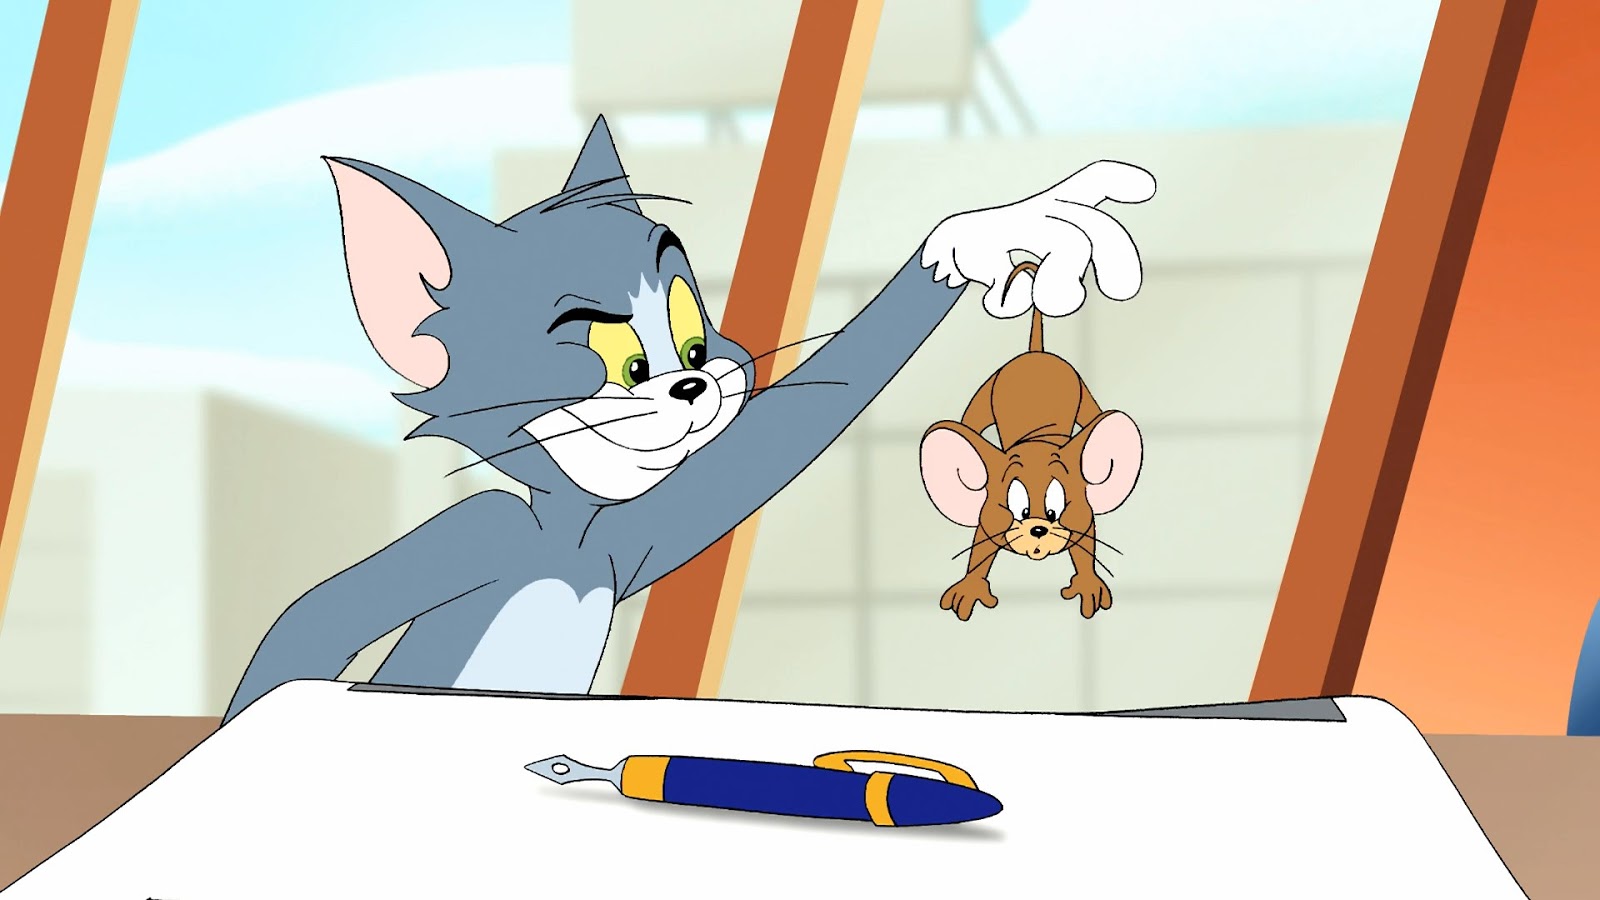 Tom+y+Jerry+R%C3%A1pido+y+furioso+%282005%29+1080p+BRRip+Latino+-+Ingles+-+Descargatepelis.com.mkv_snapshot_00.14.17.440.jpg (1600×900)